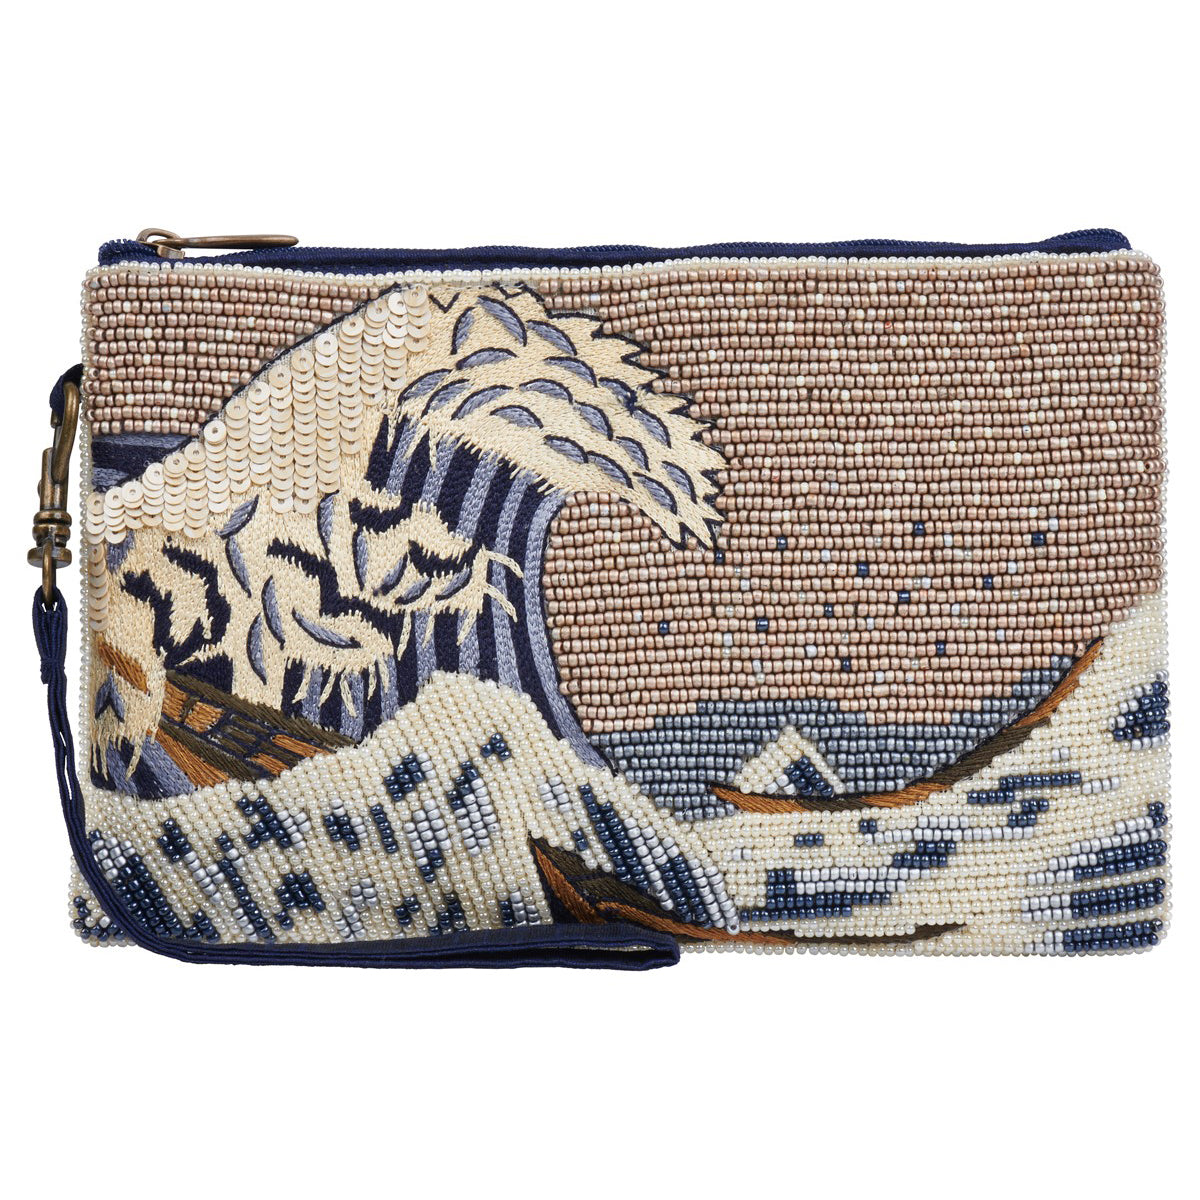 Bolso club con cuentas: La gran ola de Kanagawa de Hokusai